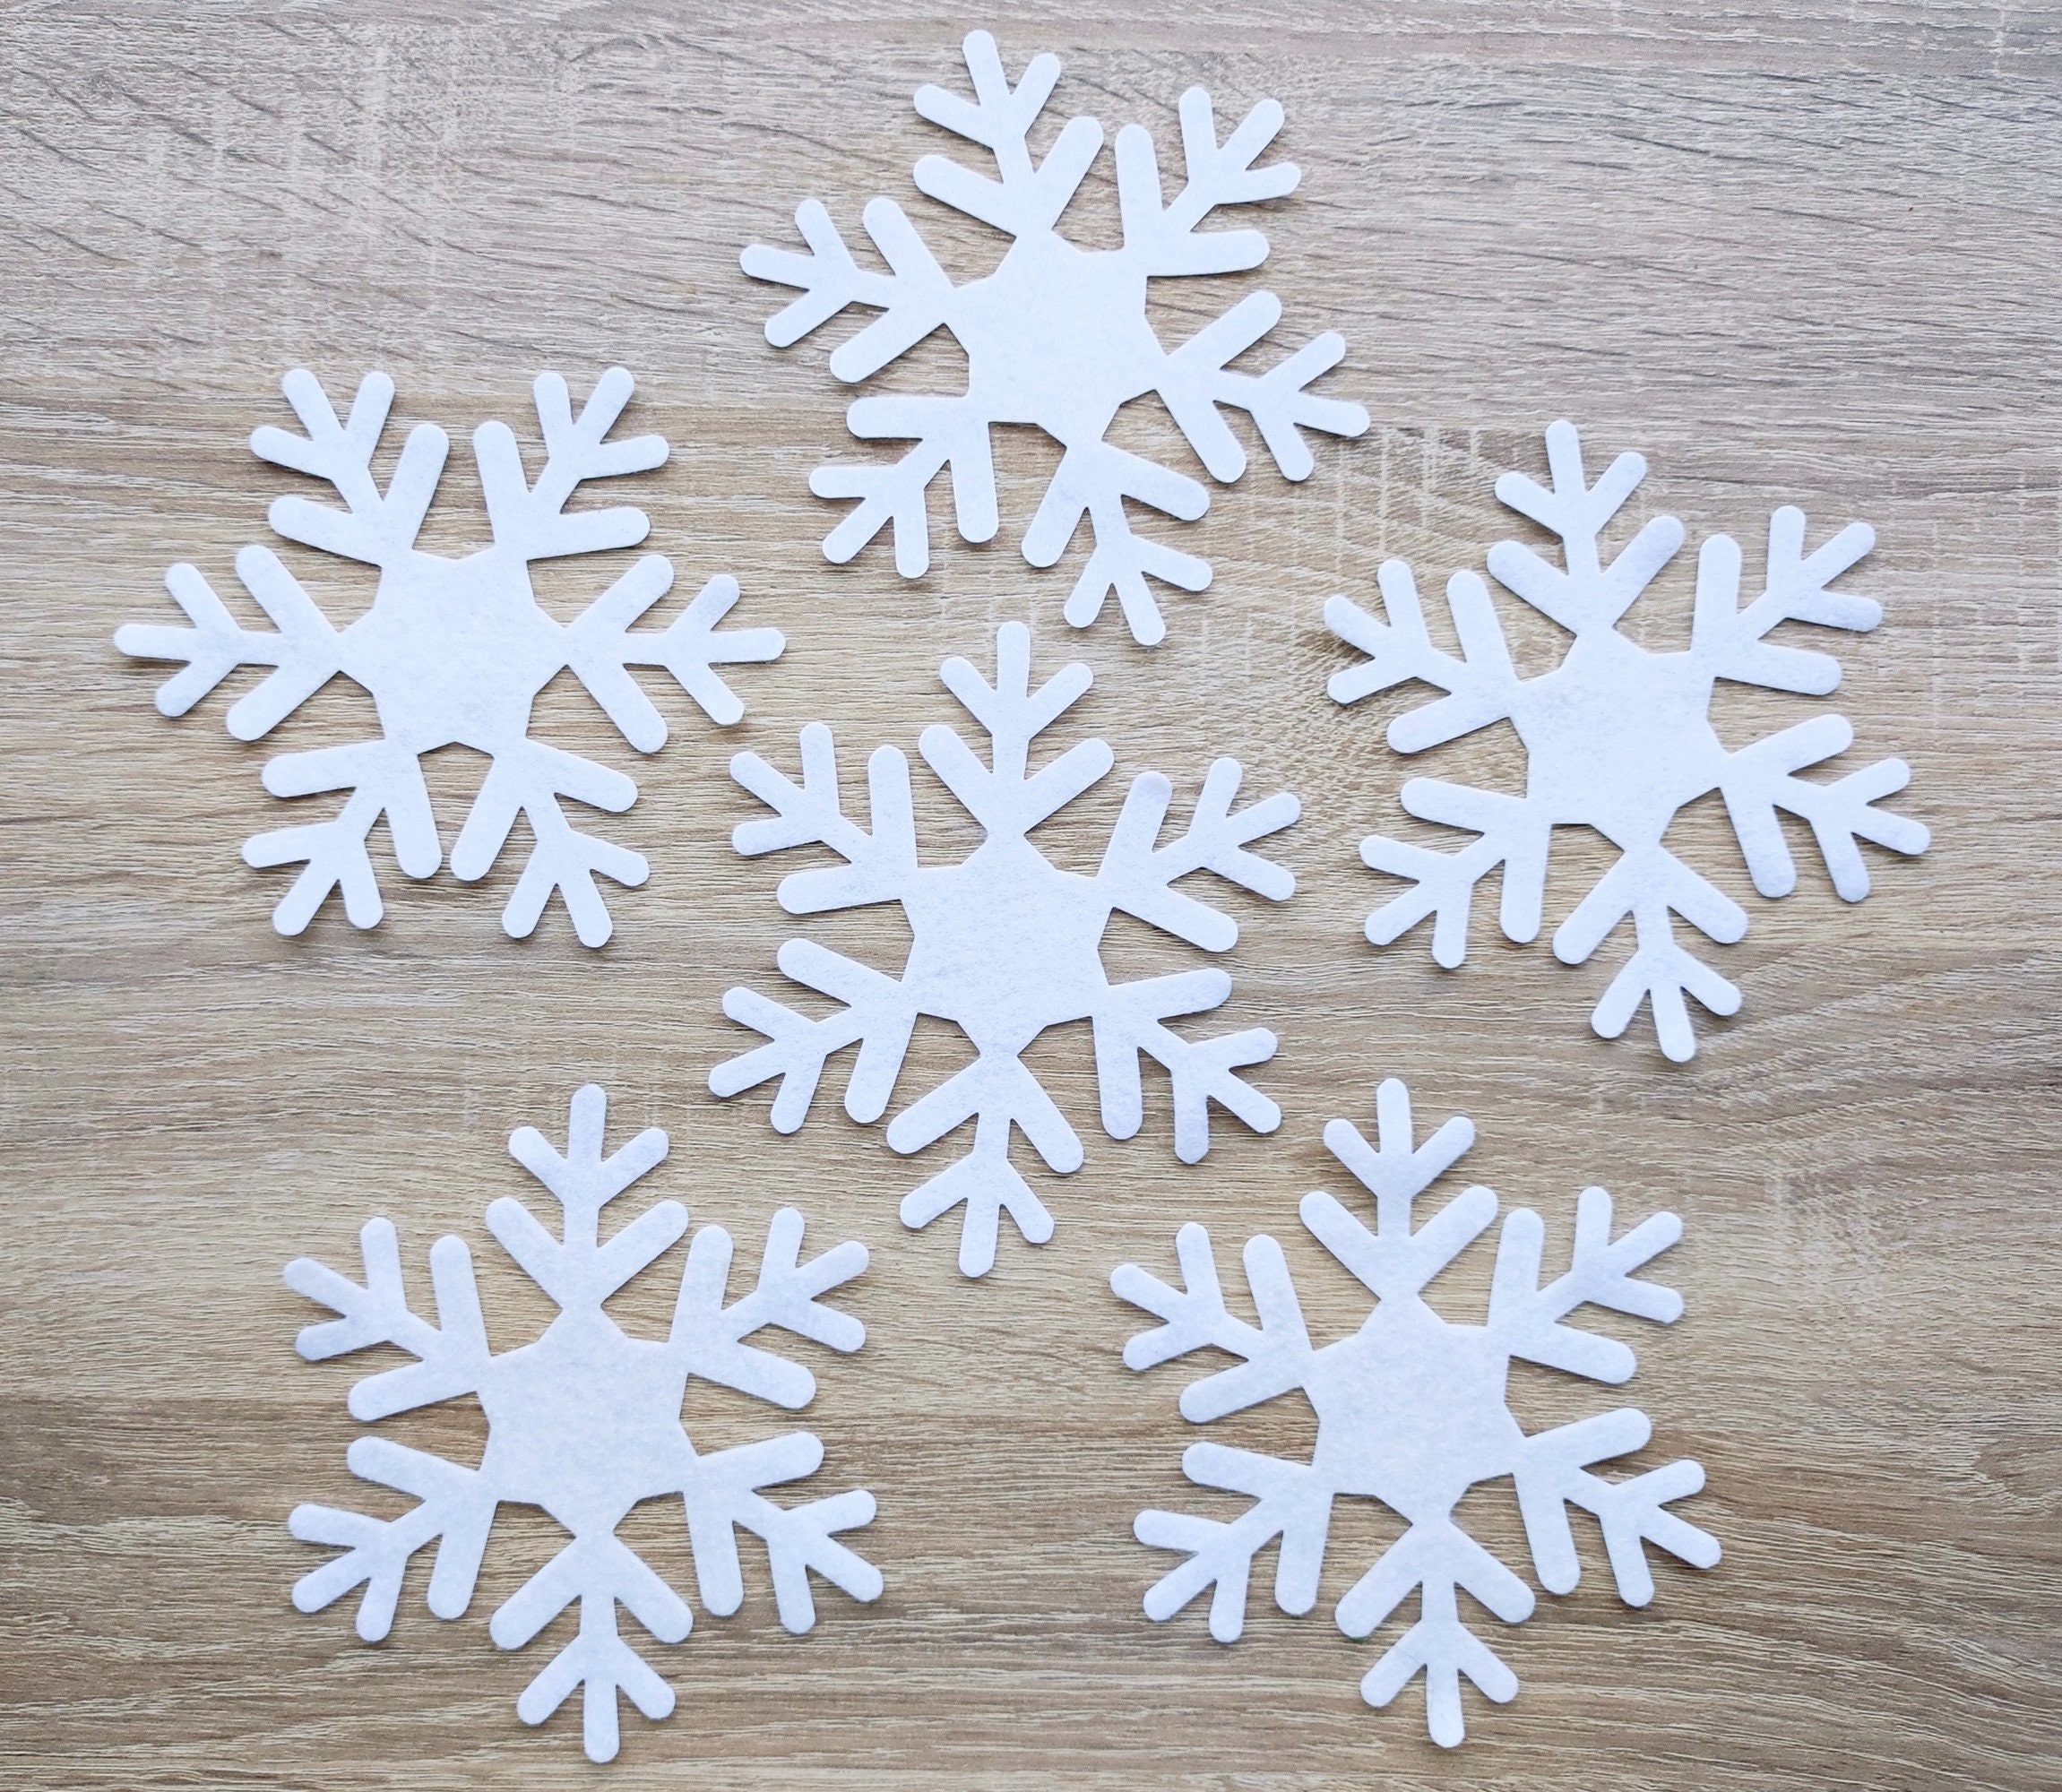 Fiocco di neve - Decorazione in feltro - Misura 6,5 x 7,5 cm - Tricot Cafè